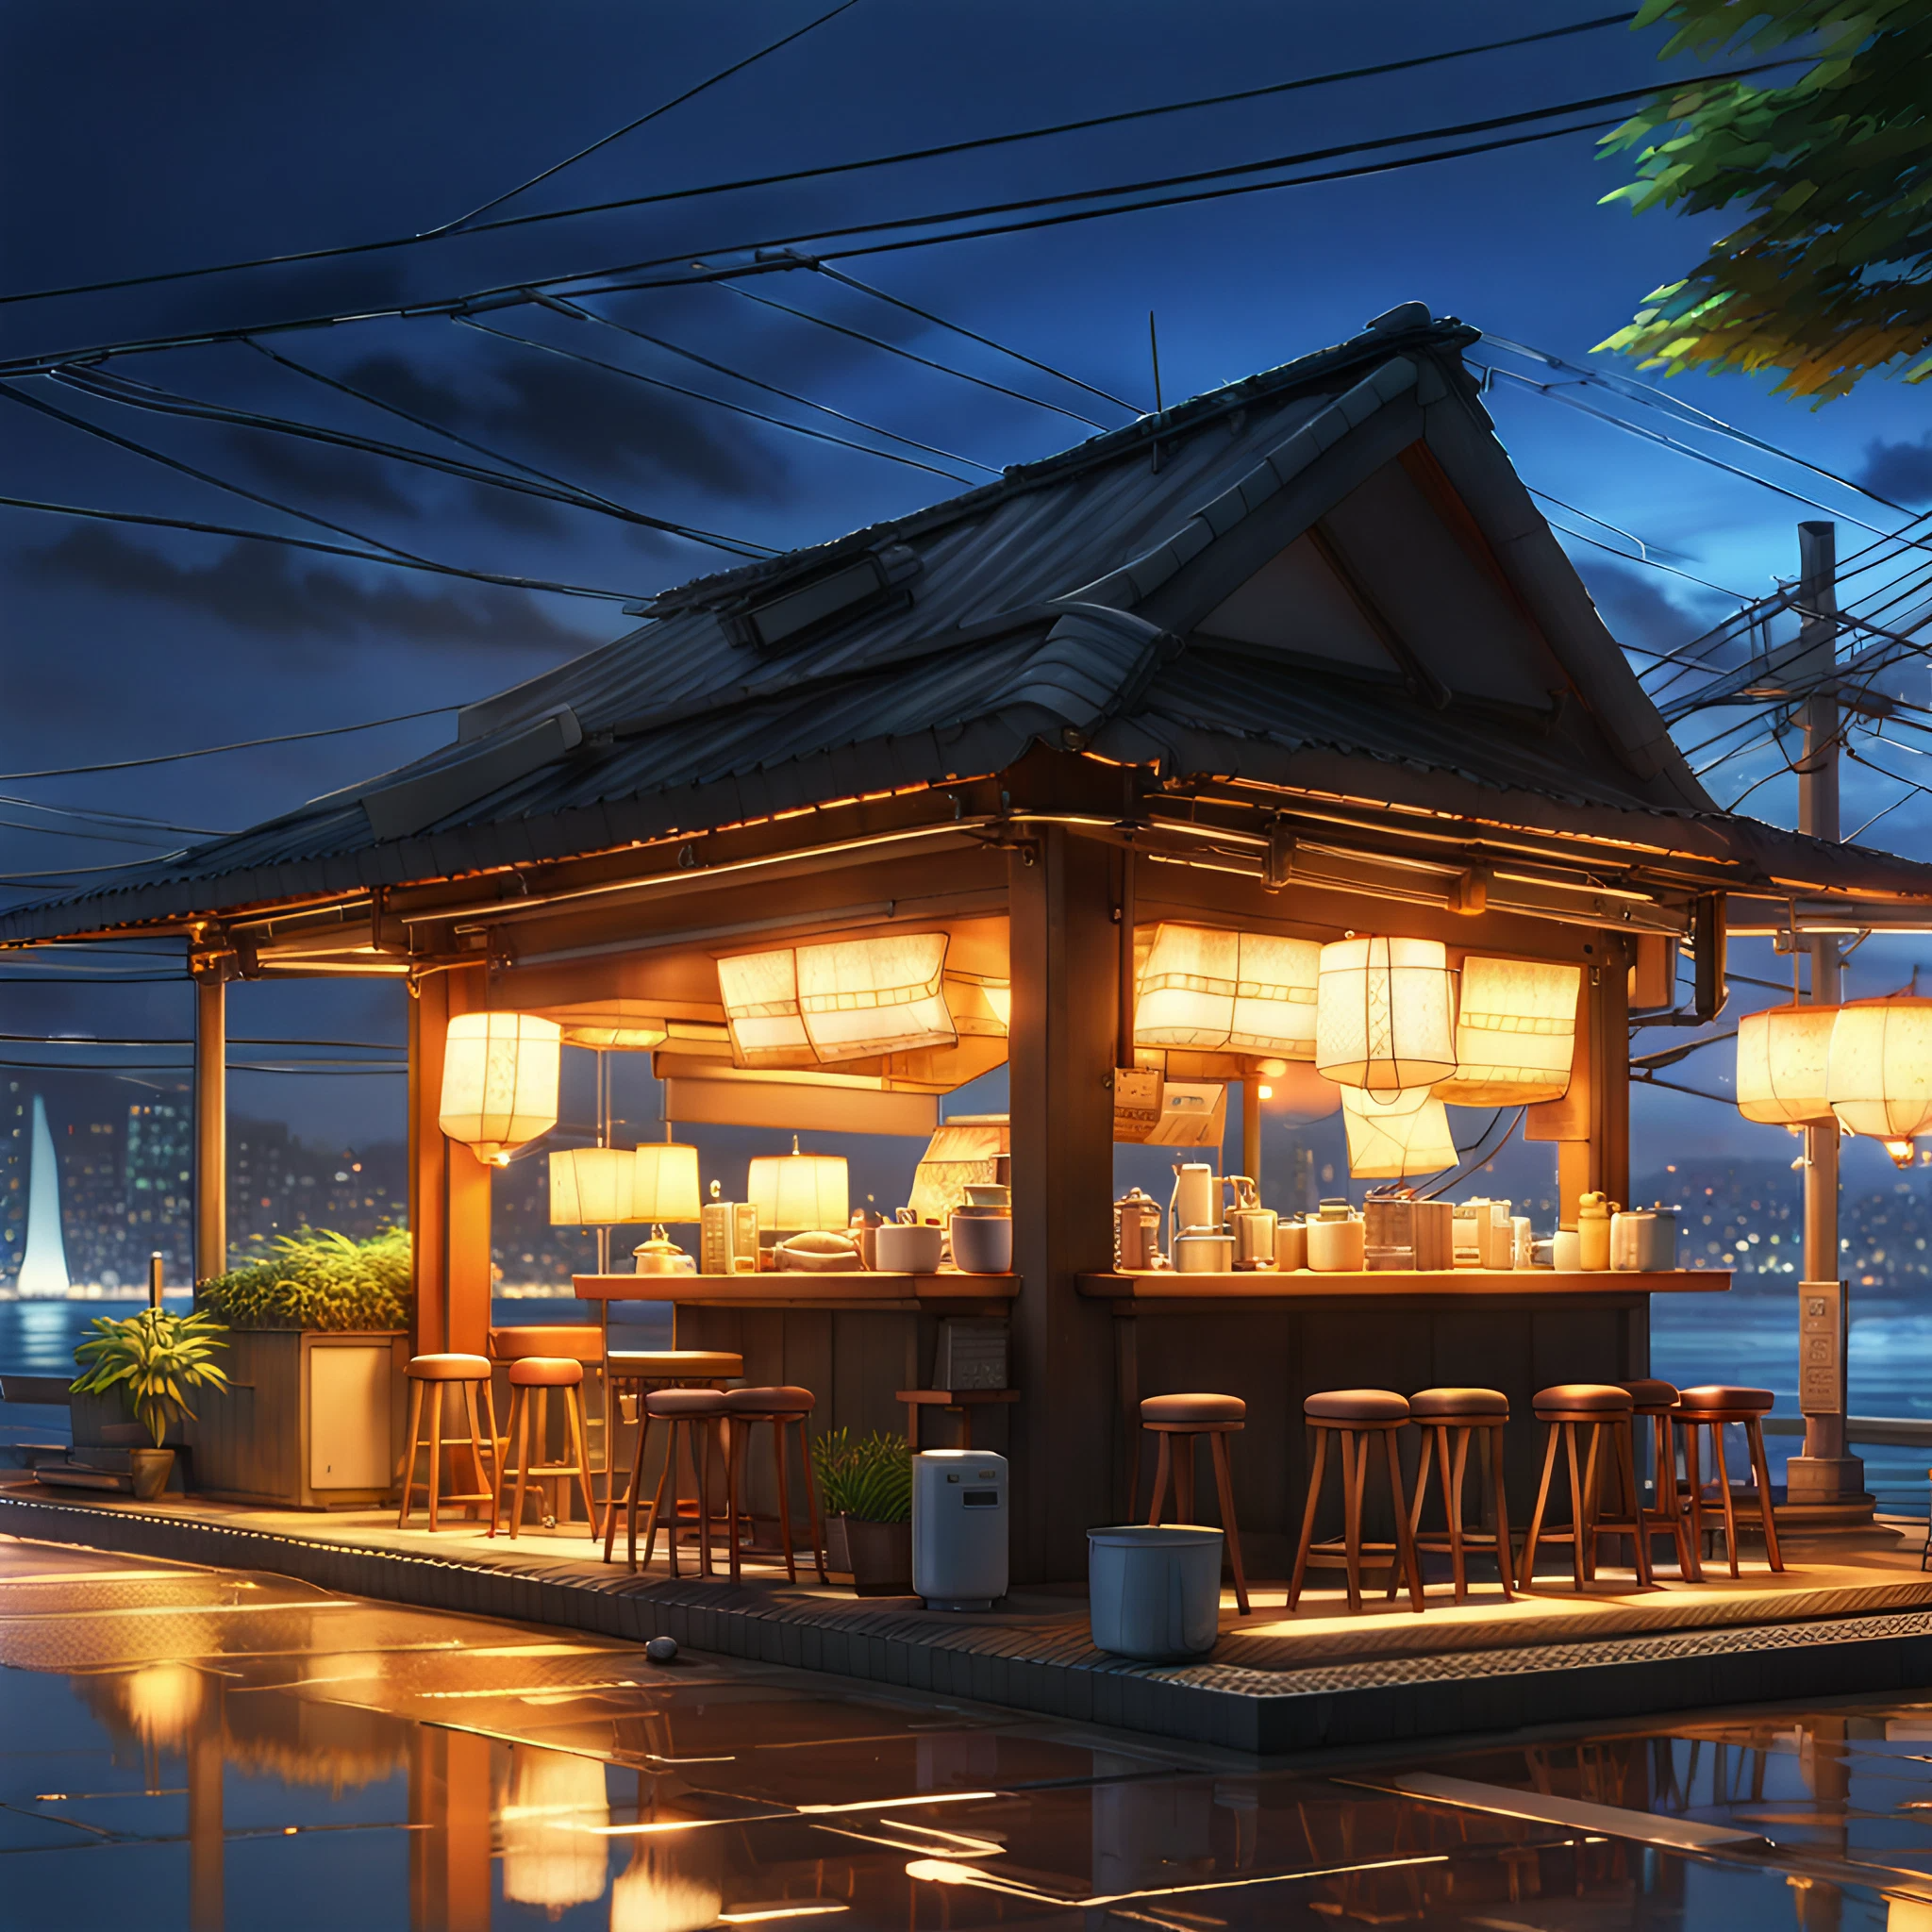 美しい日本の屋台と綺麗に明かりの灯る朝焼けの風景